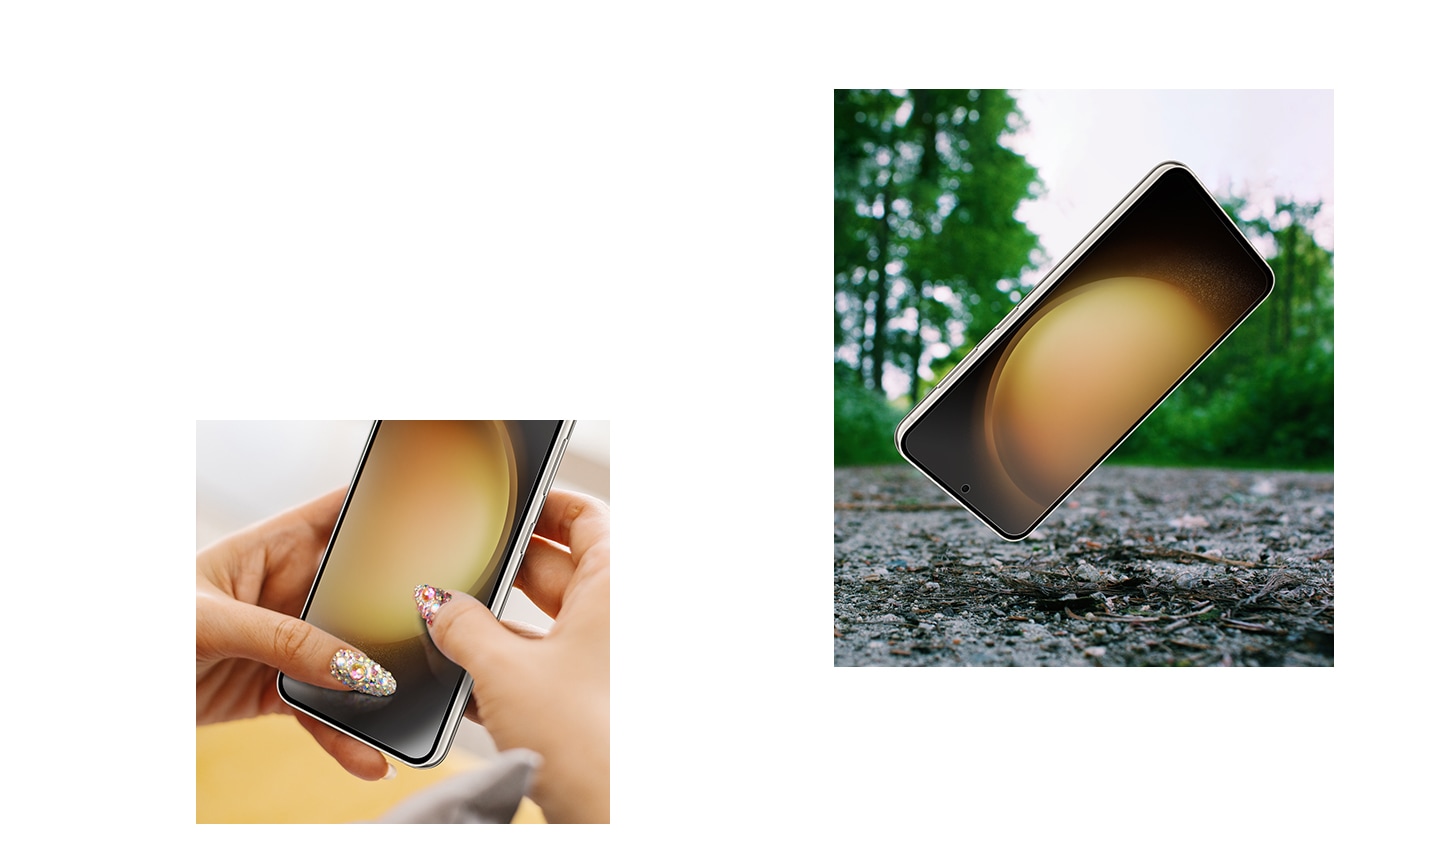 Ein Galaxy S23 Plus Smartphone inklusive Displayschutzfolie wird auf eine raue Oberfläche gelegt. Zwei Hände, die ein Galaxy S23 Plus Smartphone samt Displayschutzfolie halten, zerkratzen mit den Fingernägeln das Display, um die Anti-Kratz-Beschichtung zu demonstrieren.